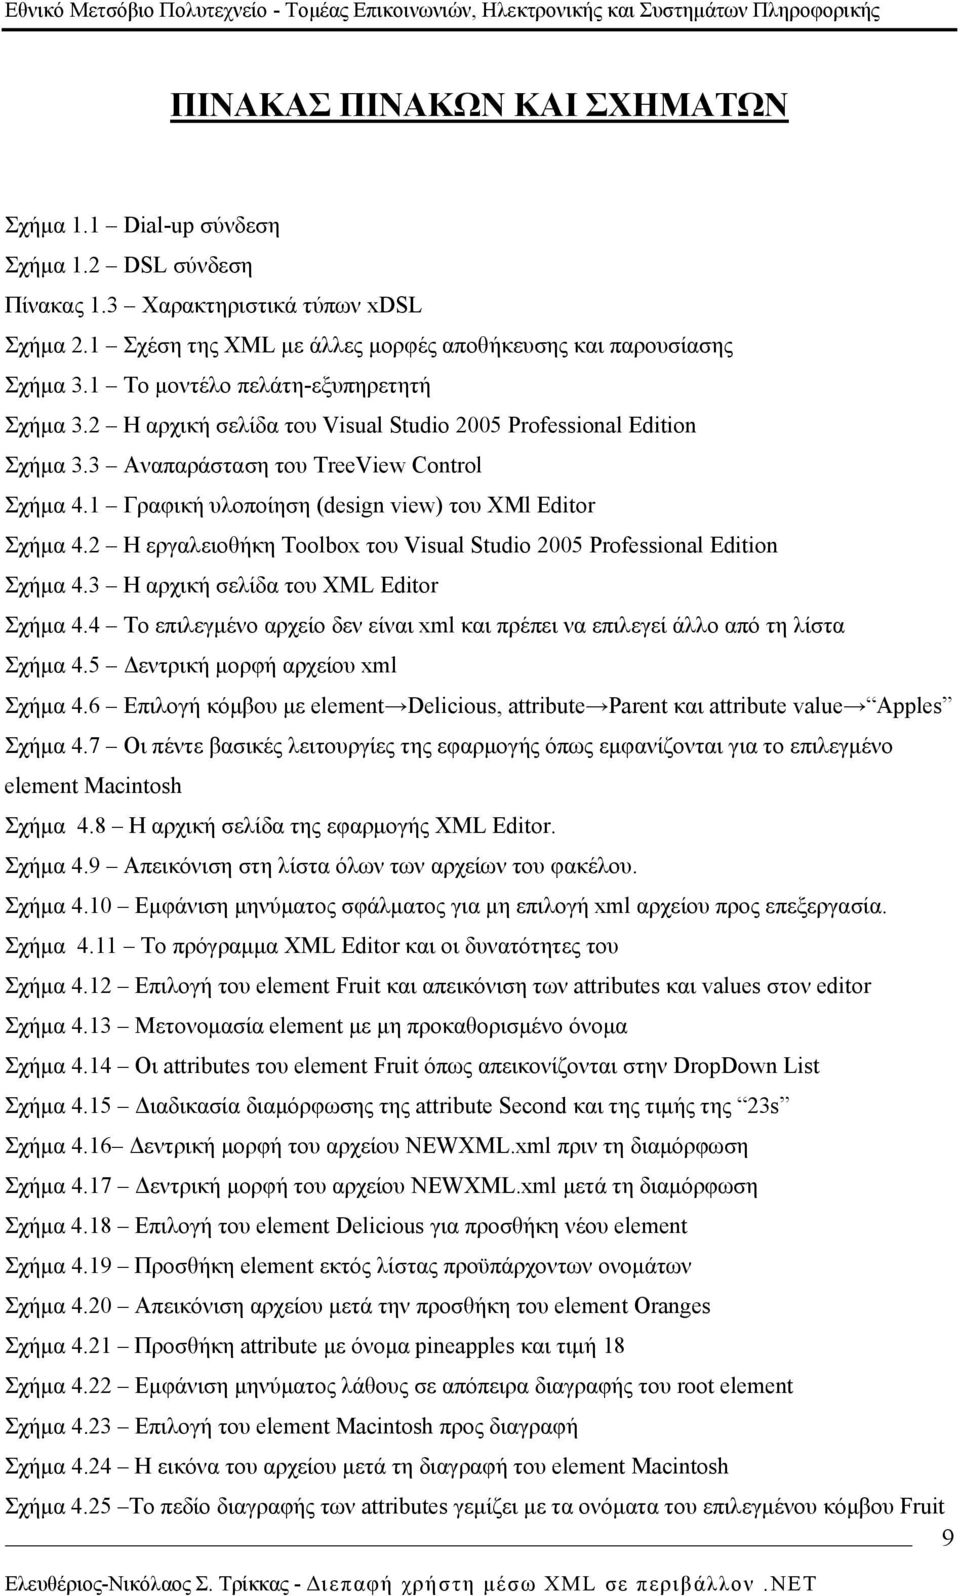 1 Γραφική υλοποίηση (design view) του XMl Editor Σχήμα 4.2 Η εργαλειοθήκη Toolbox του Visual Studio 2005 Professional Edition Σχήμα 4.3 Η αρχική σελίδα του XML Editor Σχήμα 4.